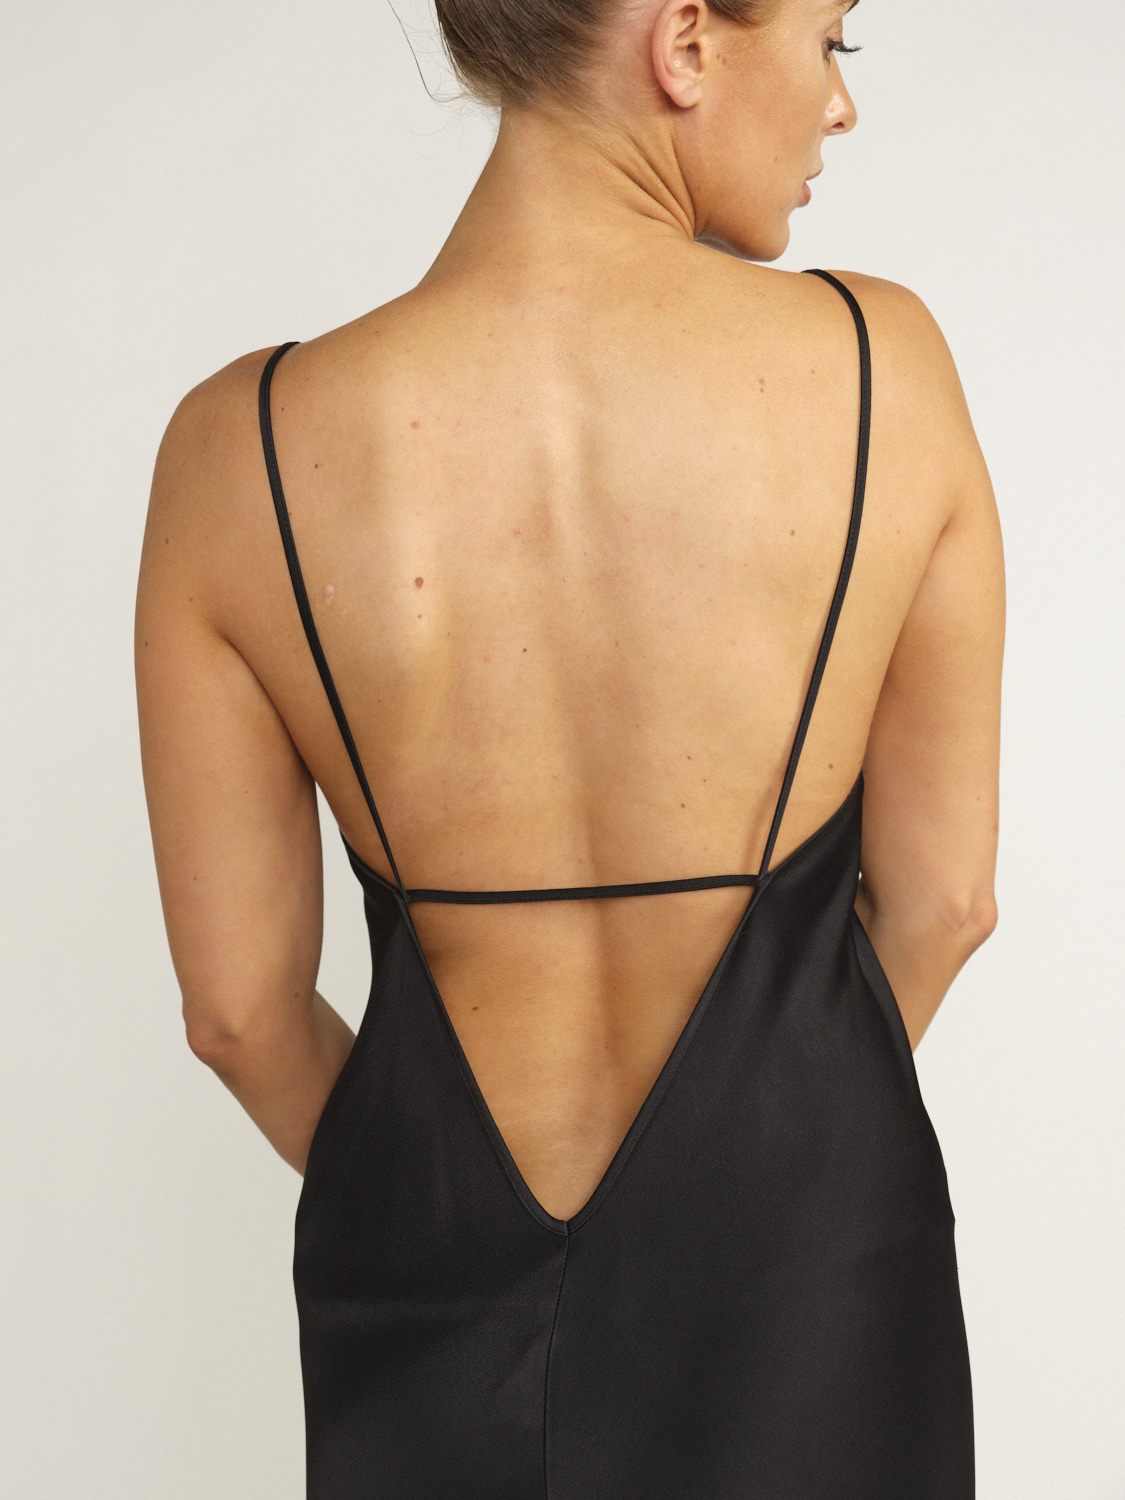 Victoria Beckham Floor Length Cami Dress – Bodenlanges Kleid aus fließendem Stoff schwarz 34